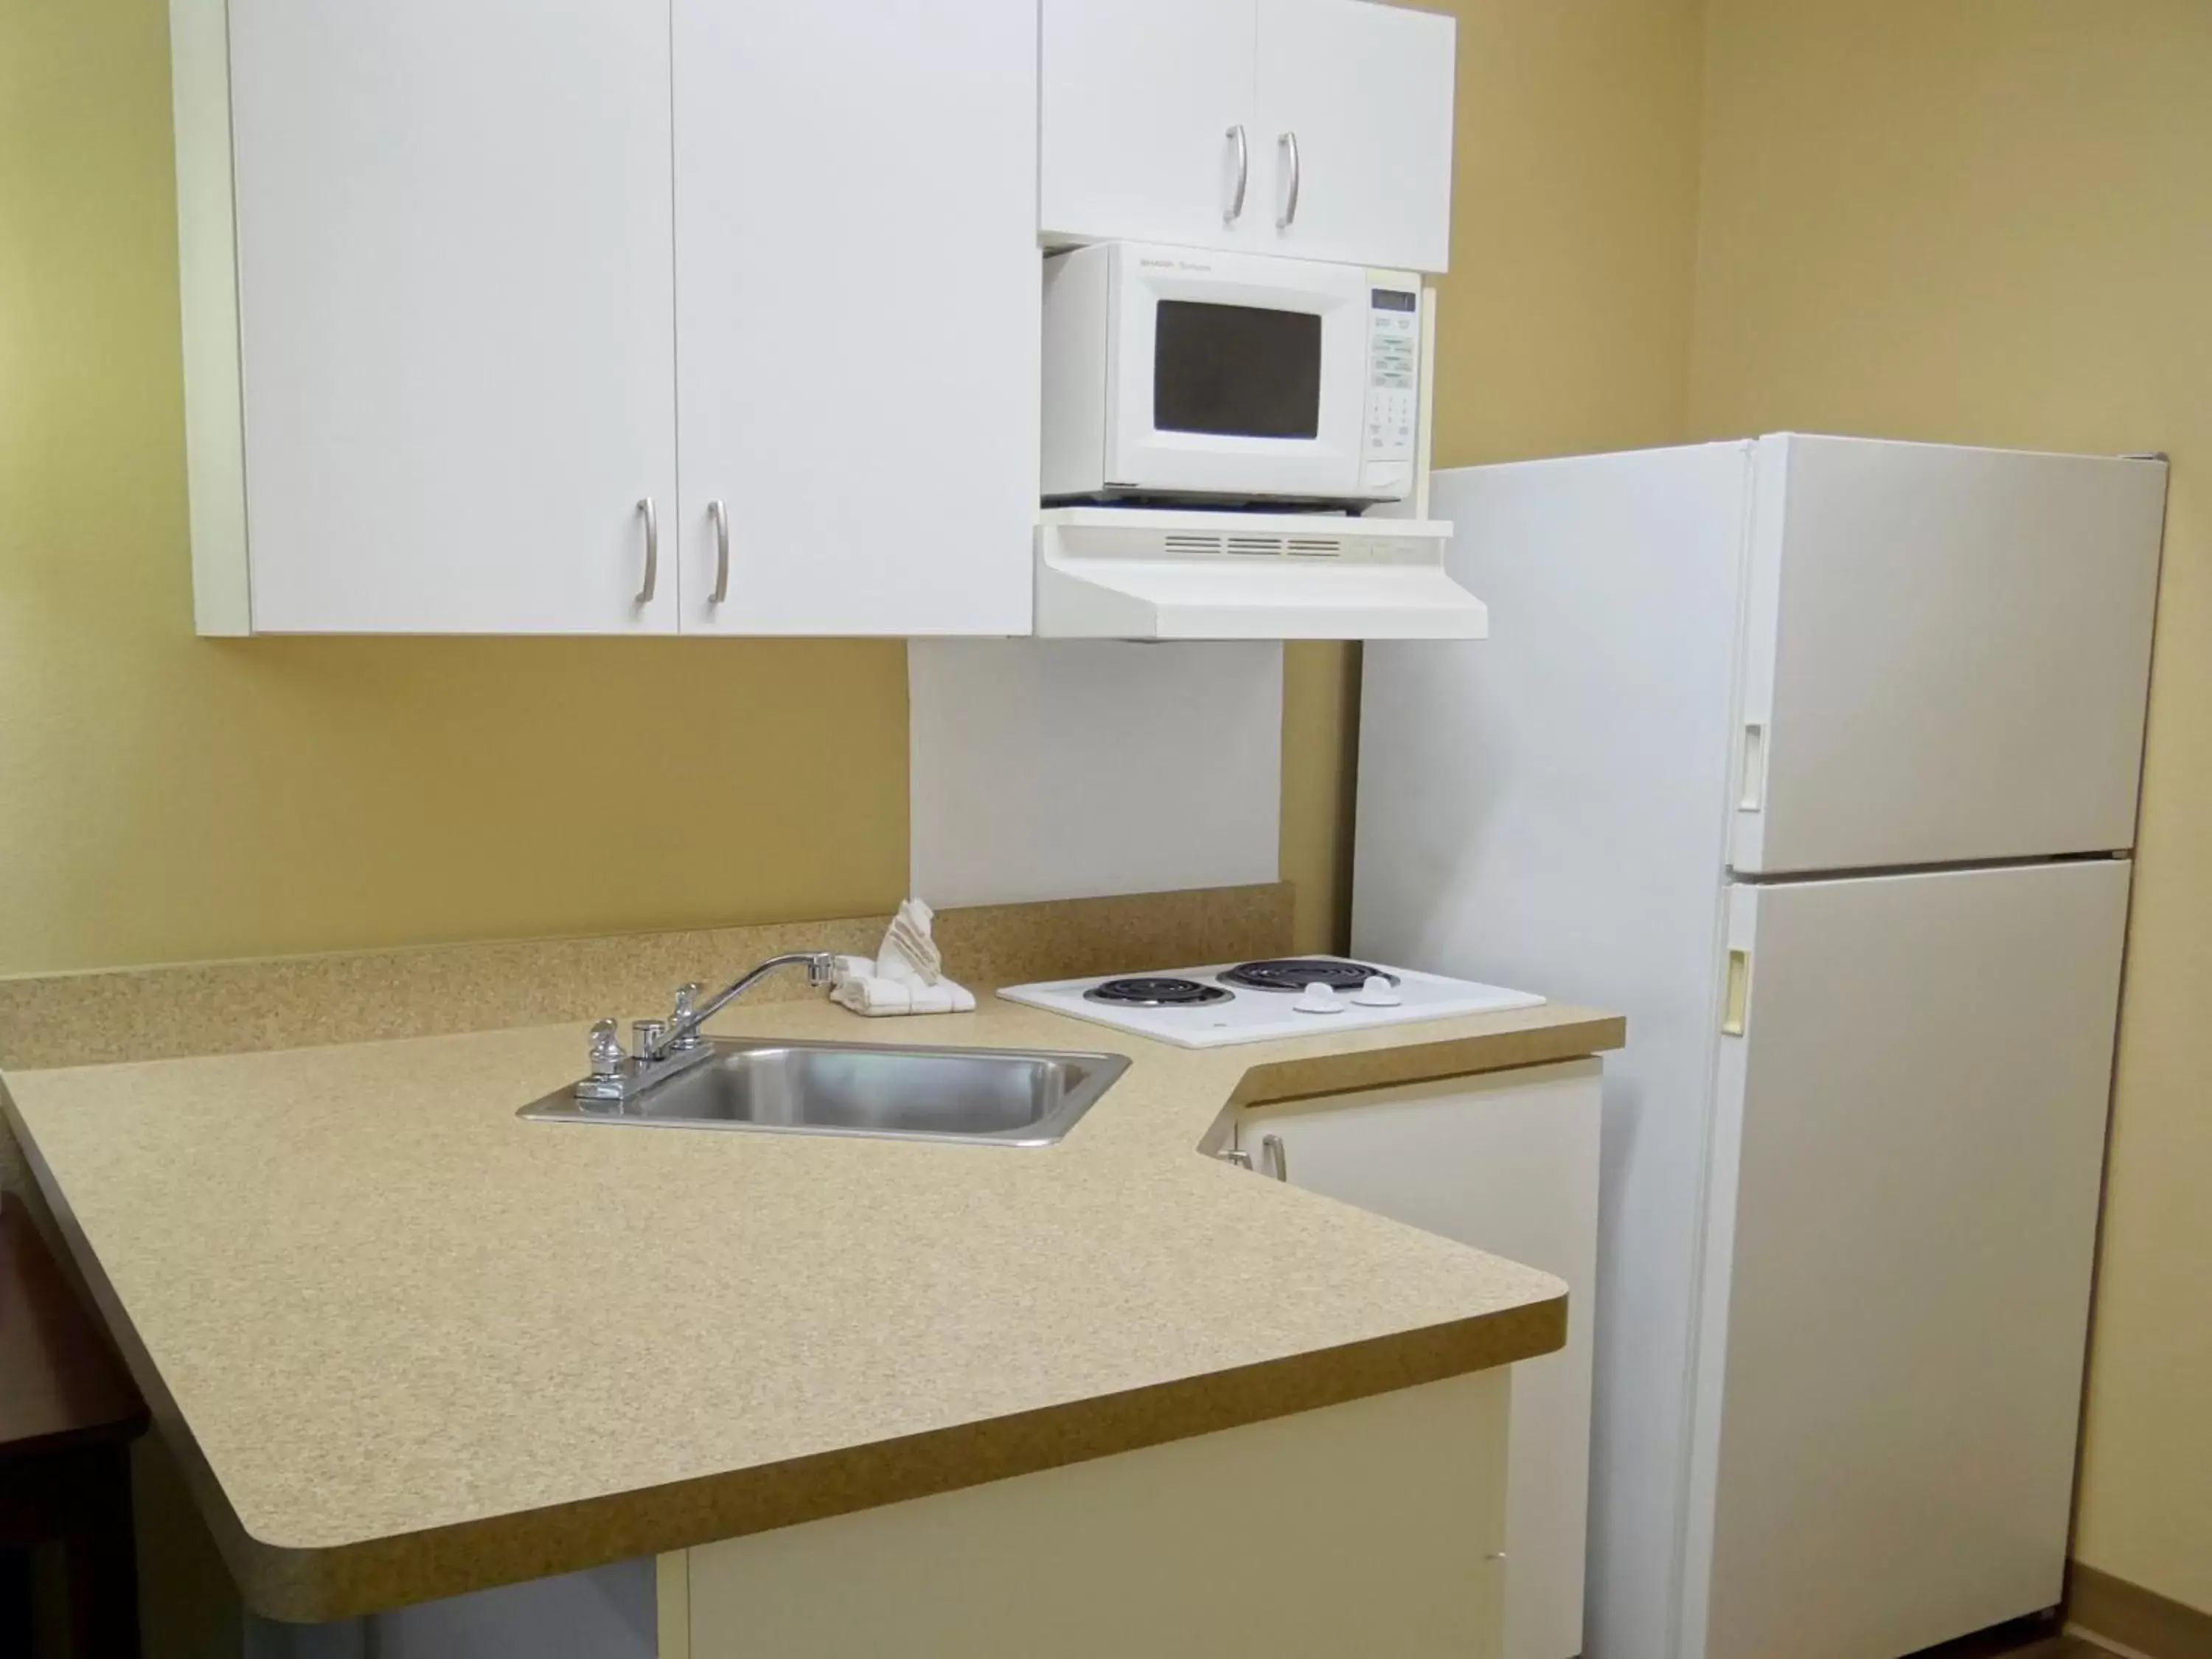 Kitchen or kitchenette, Kitchen/Kitchenette in Extended Stay America Suites - El Paso - Airport